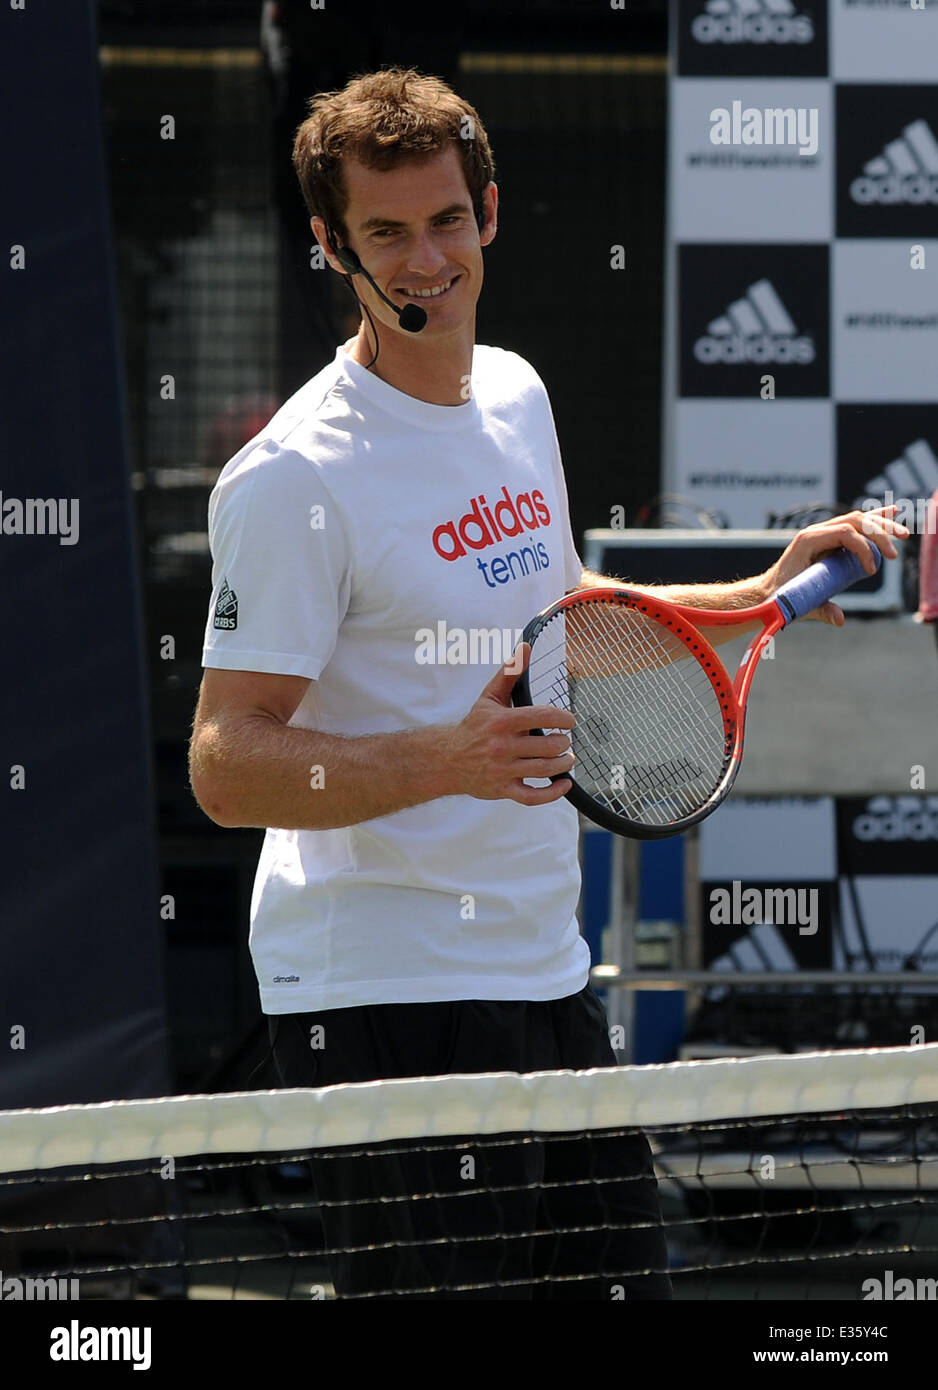 Campeona del torneo de Wimbledon, Andy Murray es retratada en un evento de Adidas, donde se reunió con sus y les desafió a golpear el ganador en sola coincidencia contra